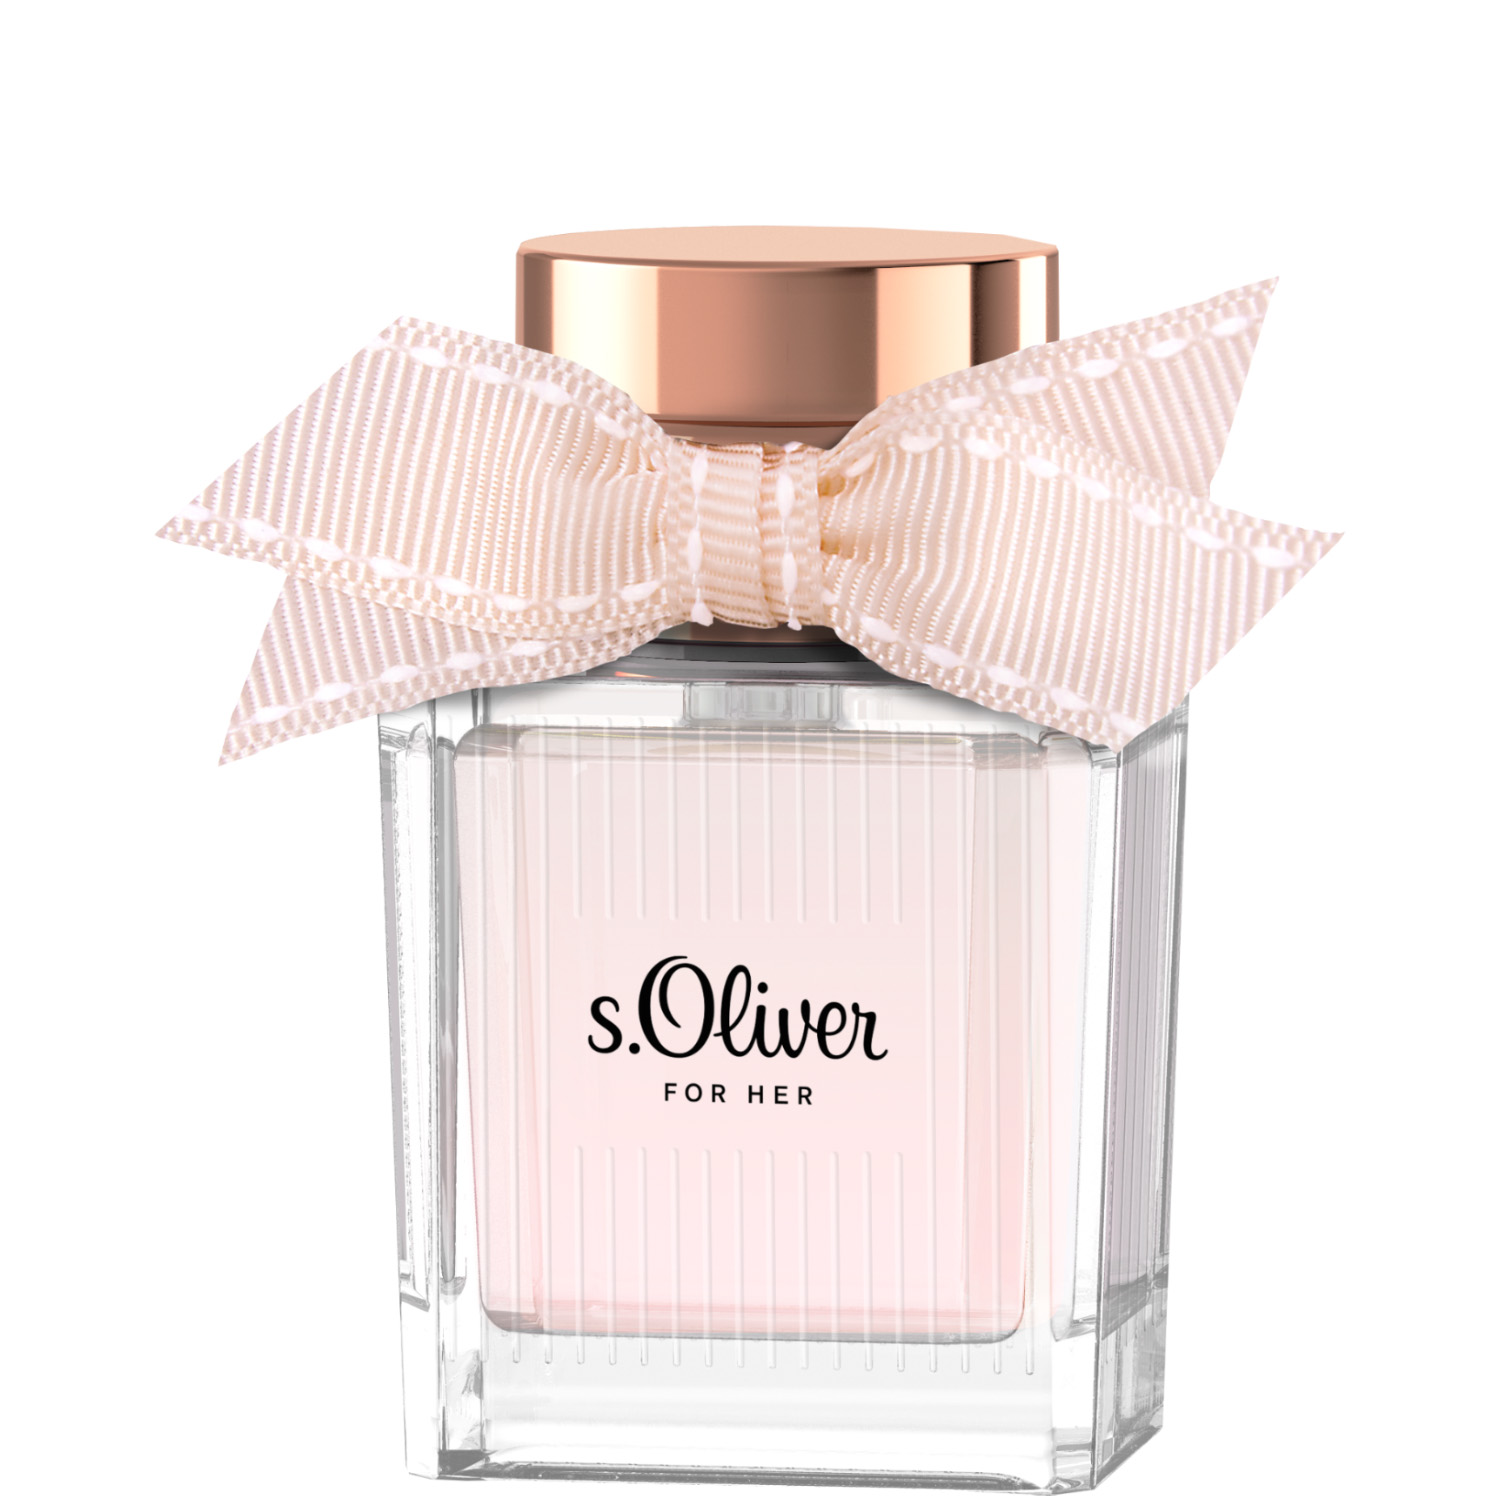 S.Oliver for Her Eau de Parfum 30ml